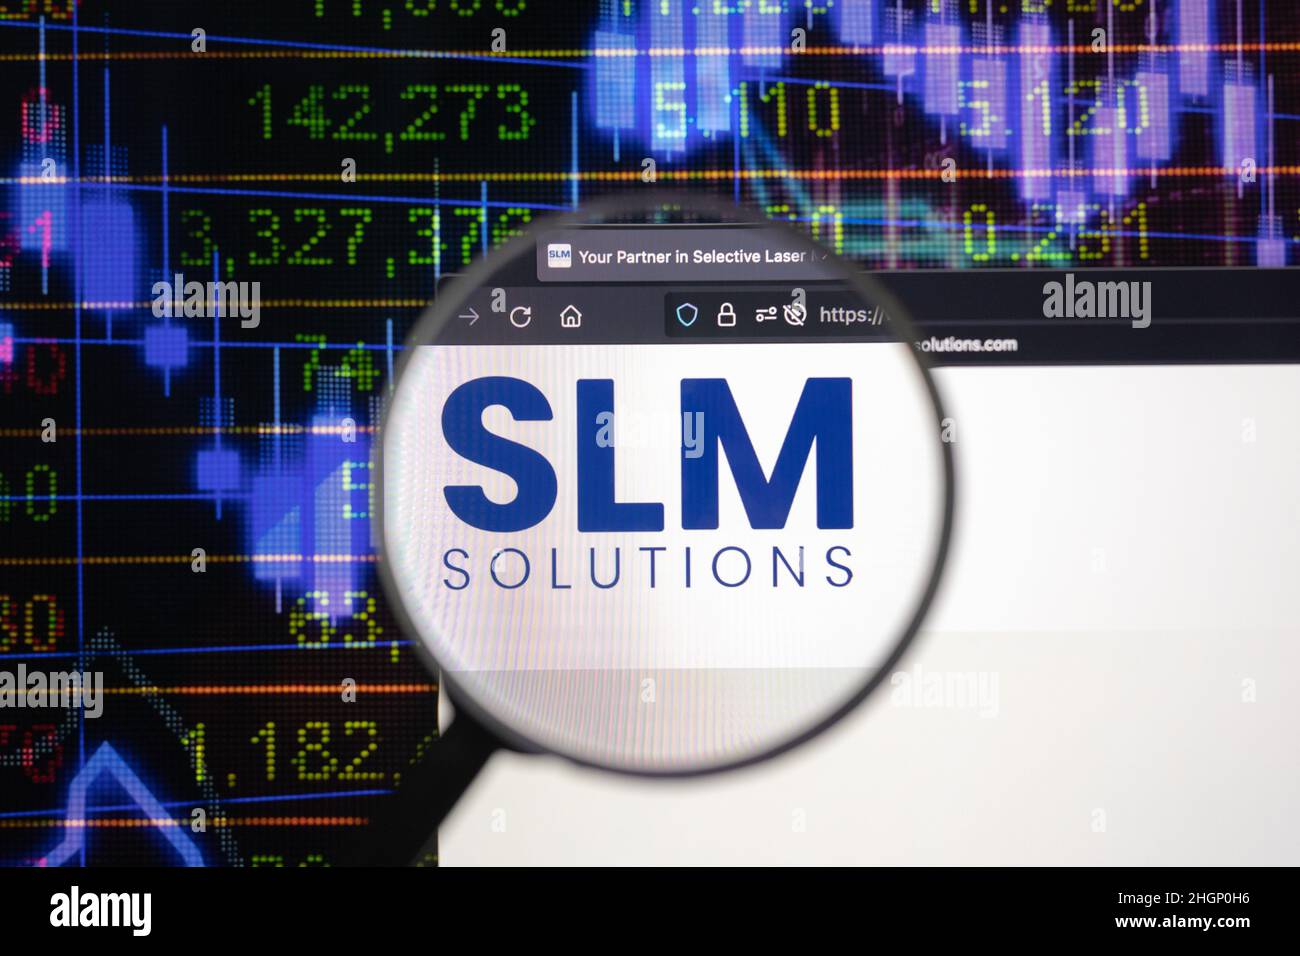 SLM Solutions logo azienda su un sito web con blurry sviluppi del mercato azionario in background, visto su uno schermo del computer attraverso una lente d'ingrandimento. Foto Stock